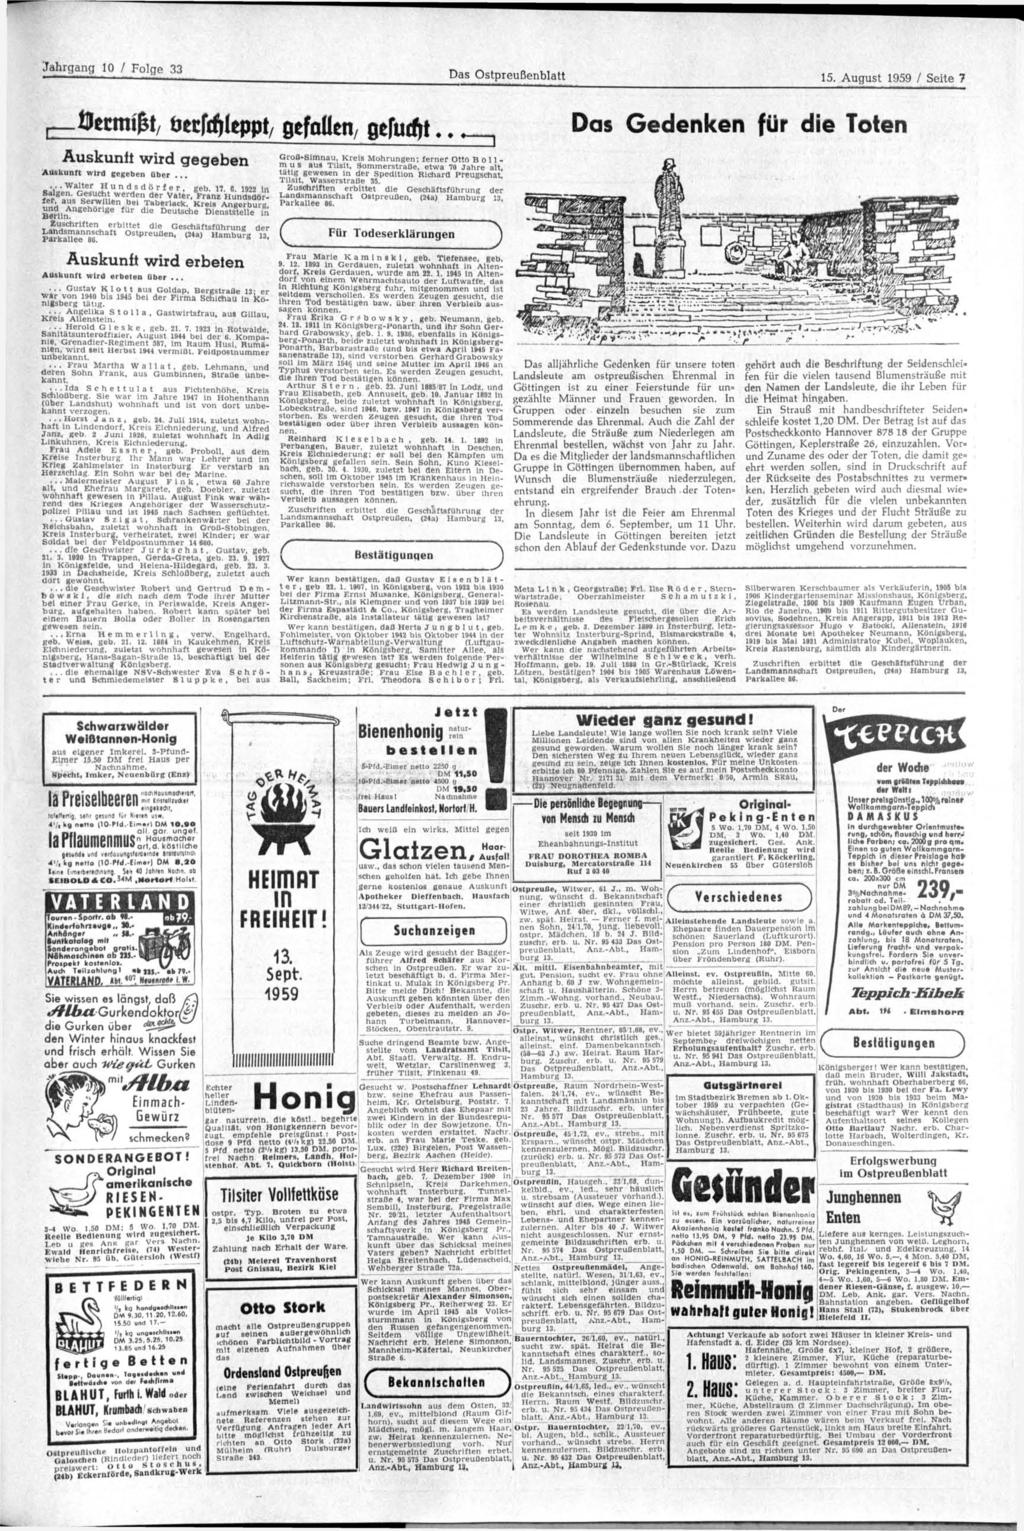 Das Ostpreußenblatt 15. August 1959 / Seite 7 fletmifr, i m W w t, gefallen, oelutfjt... Auskunft wird gegeben Auskunft wird gegeben über...... Walter Hundsdörfer, geb. 17. 6 1922 In S f r 8»? ;.